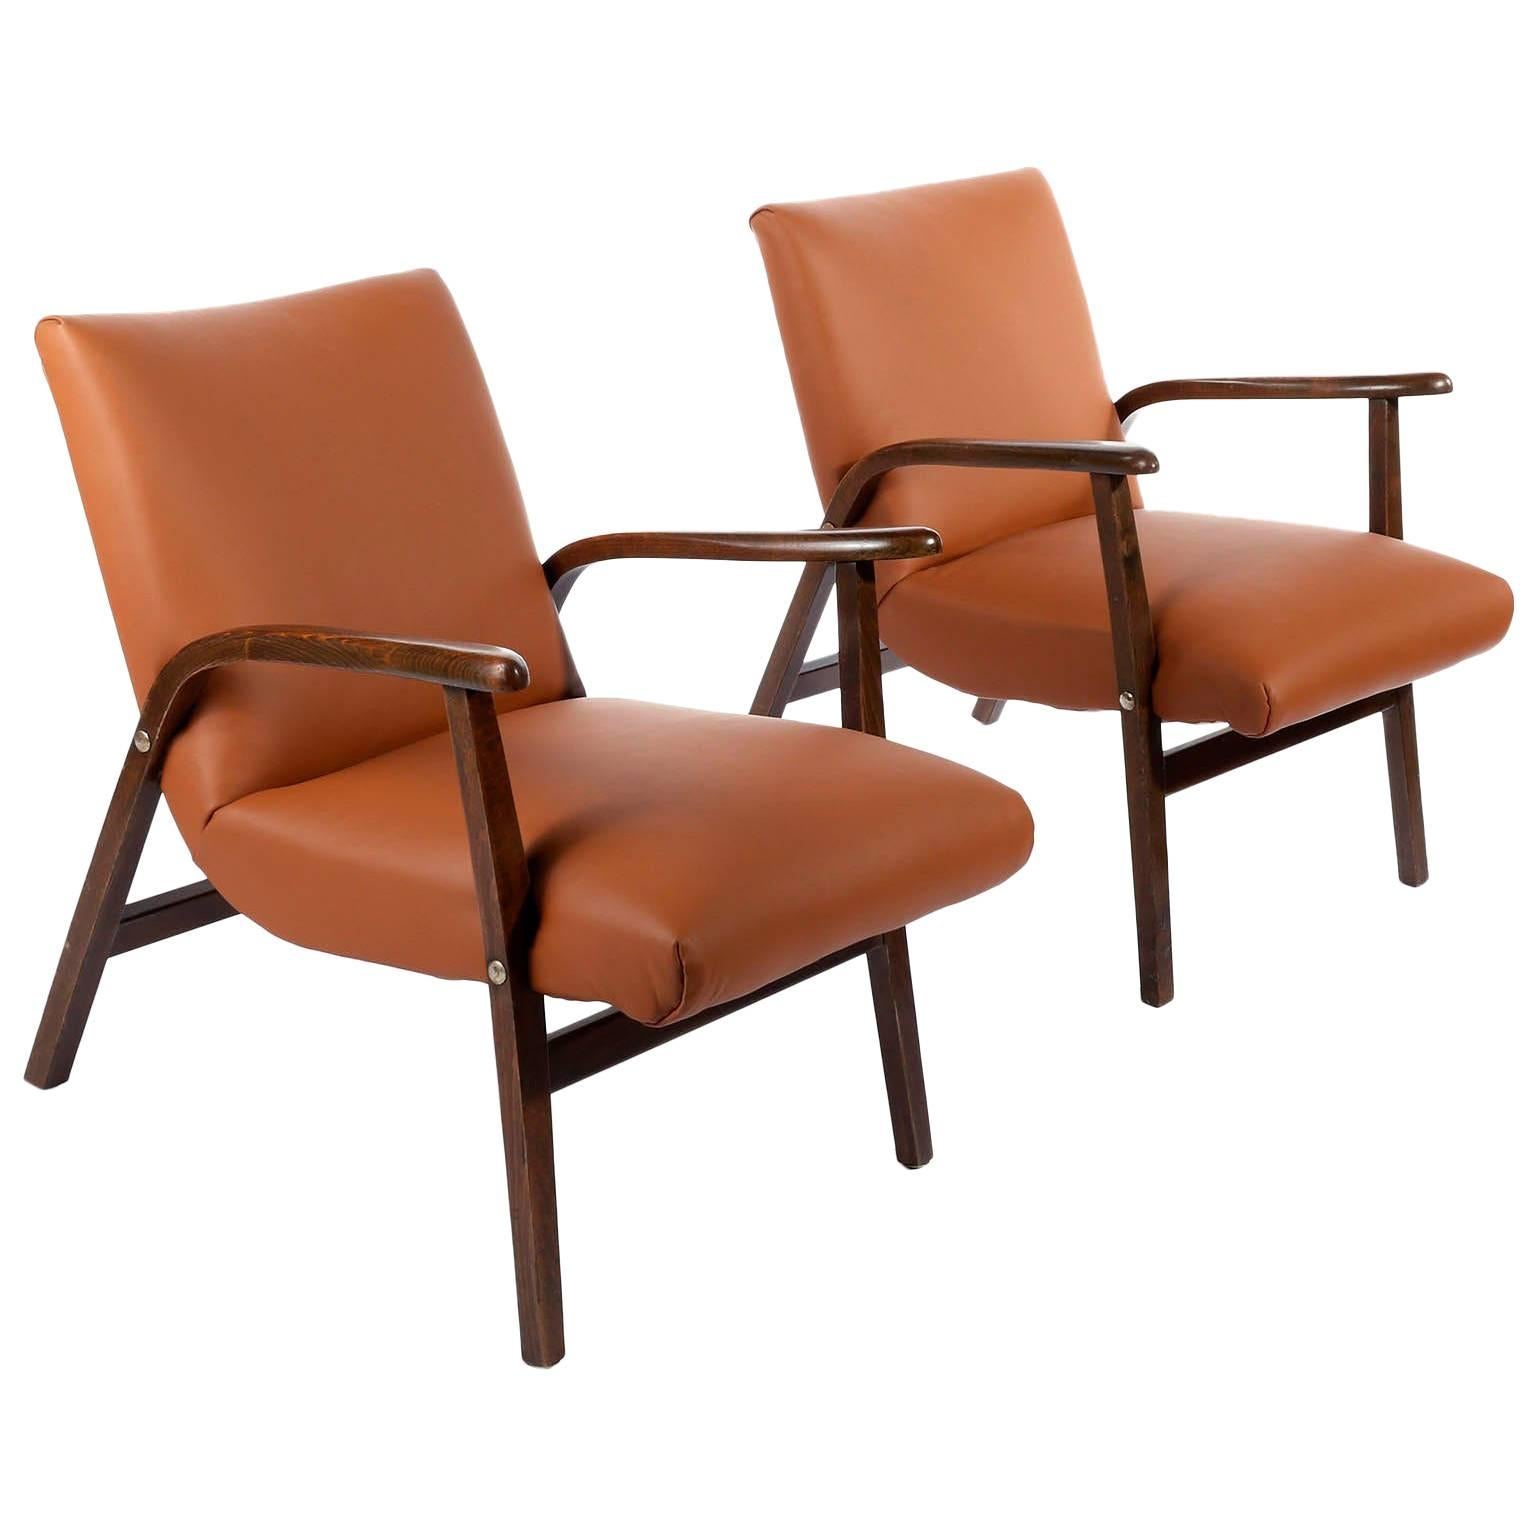 Un ensemble de deux chaises longues du milieu du siècle dernier, conçues par Roland Rainer pour le Café Ritter à Vienne, en Autriche, en 1952 et fabriquées par Emil & Alfred Pollak.
Les chaises sont en excellent état. Ils ont été remis à neuf et